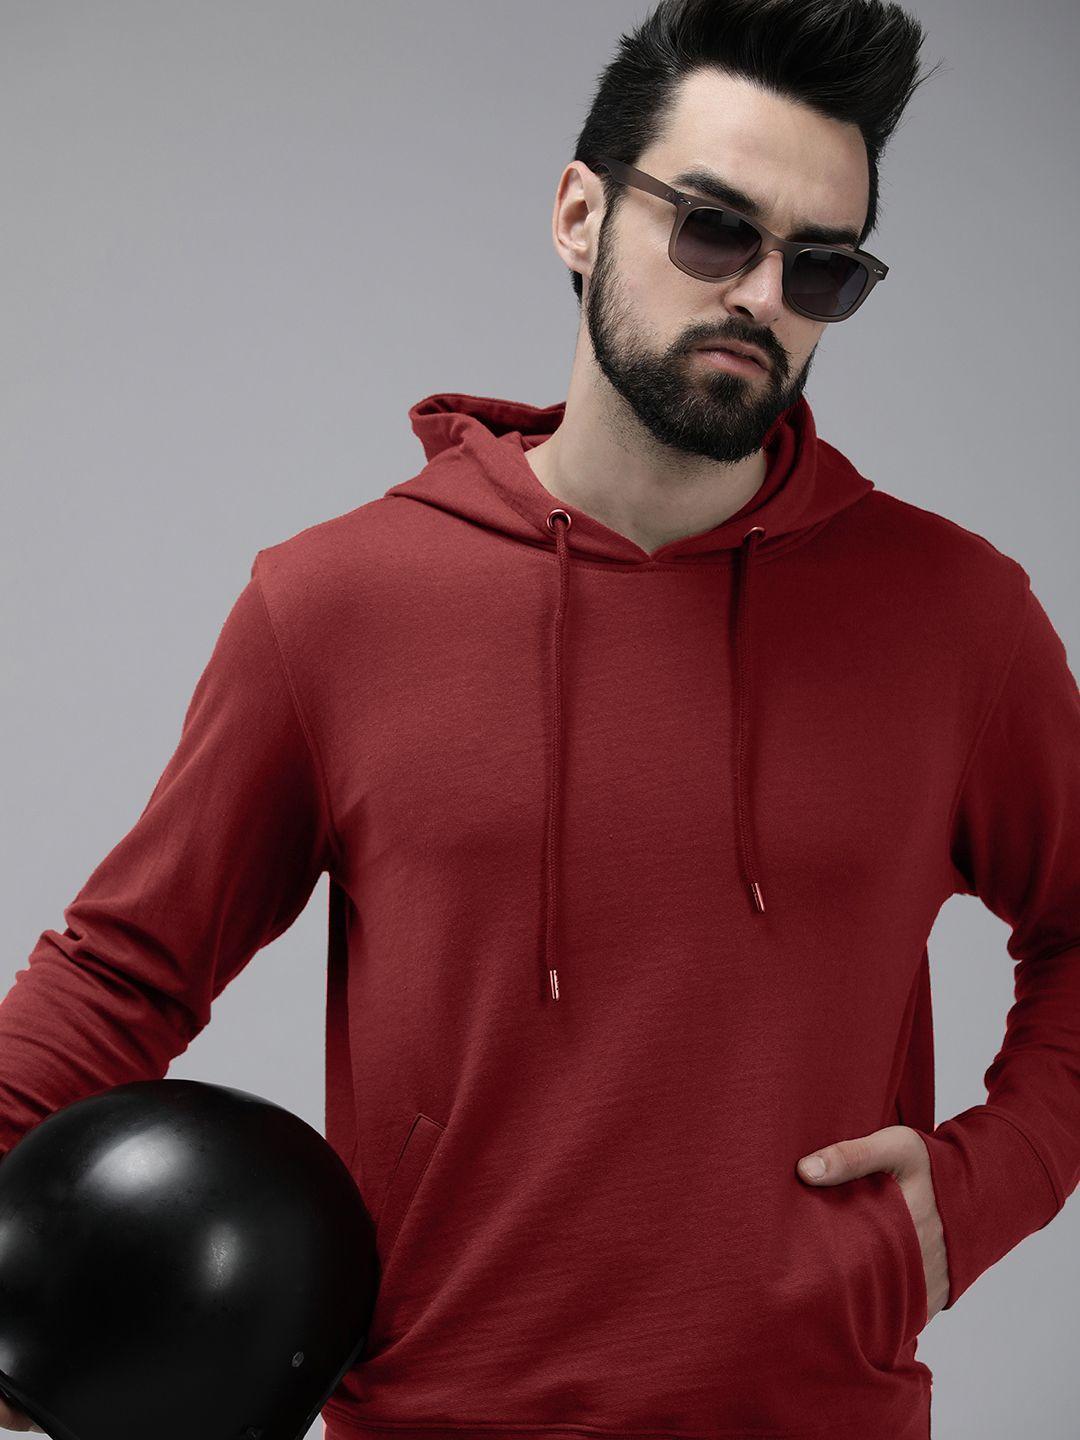 roadster-men-burgundy-solid-hooded-sweatshirt